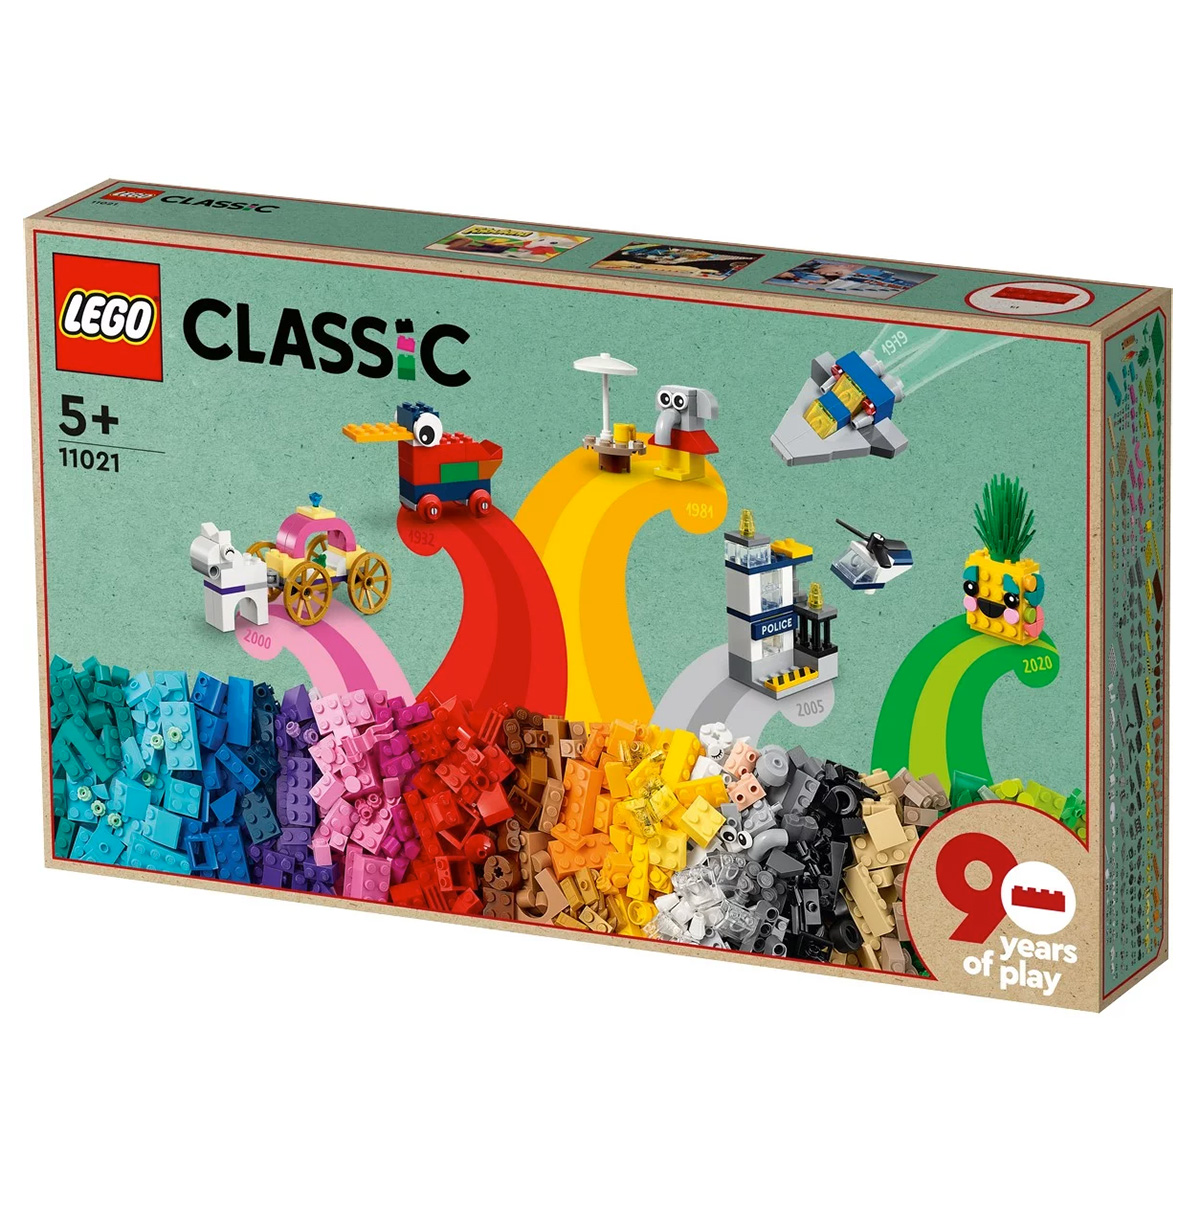 LEGO Classic 11016 pas cher, Briques de construction créatives